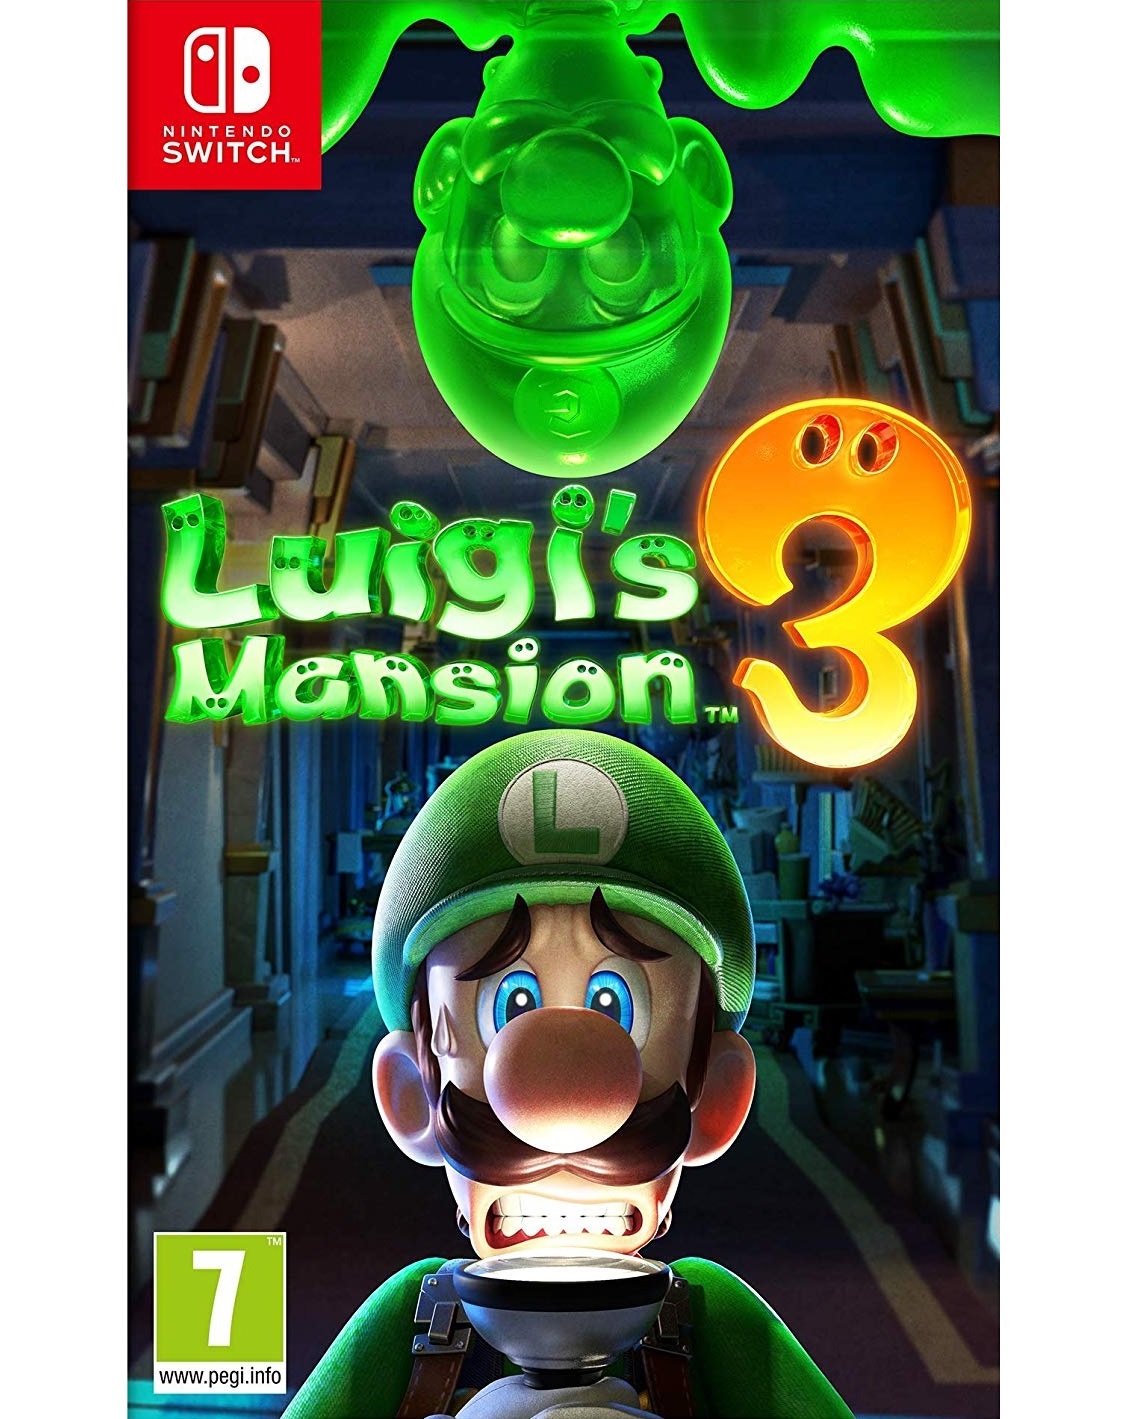 luigi's mansion switch release